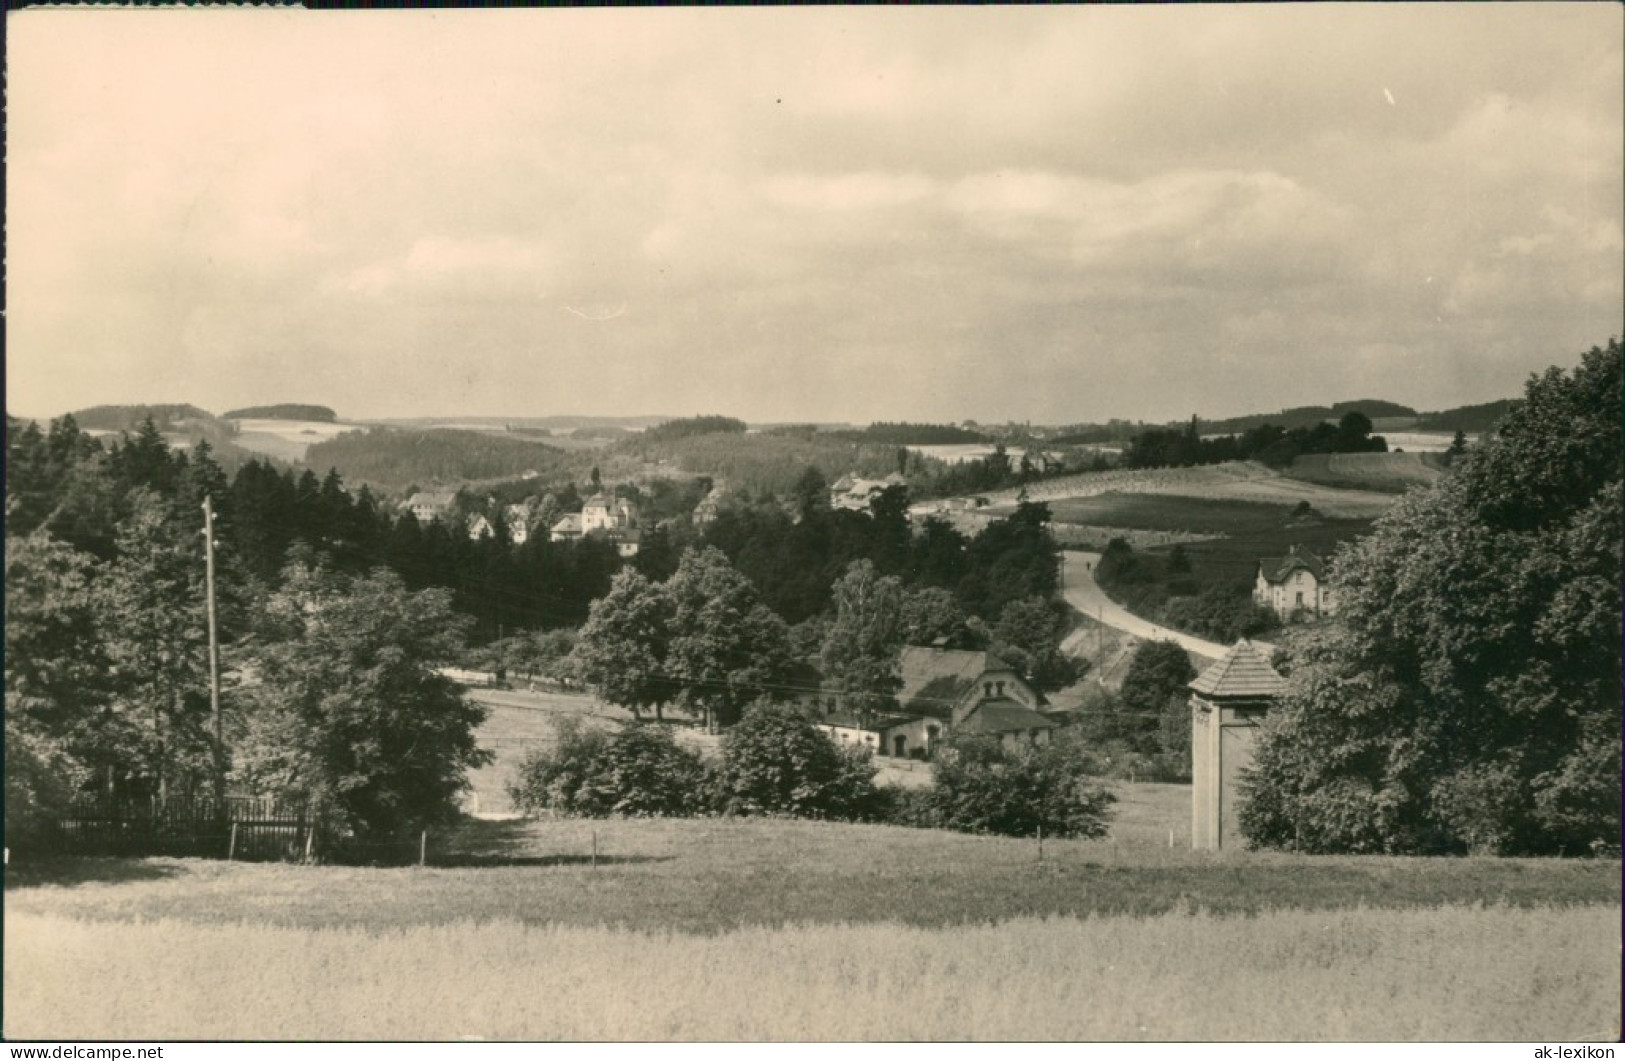 Ansichtskarte Jocketa-Pöhl Panorama über Felder 1964 - Poehl